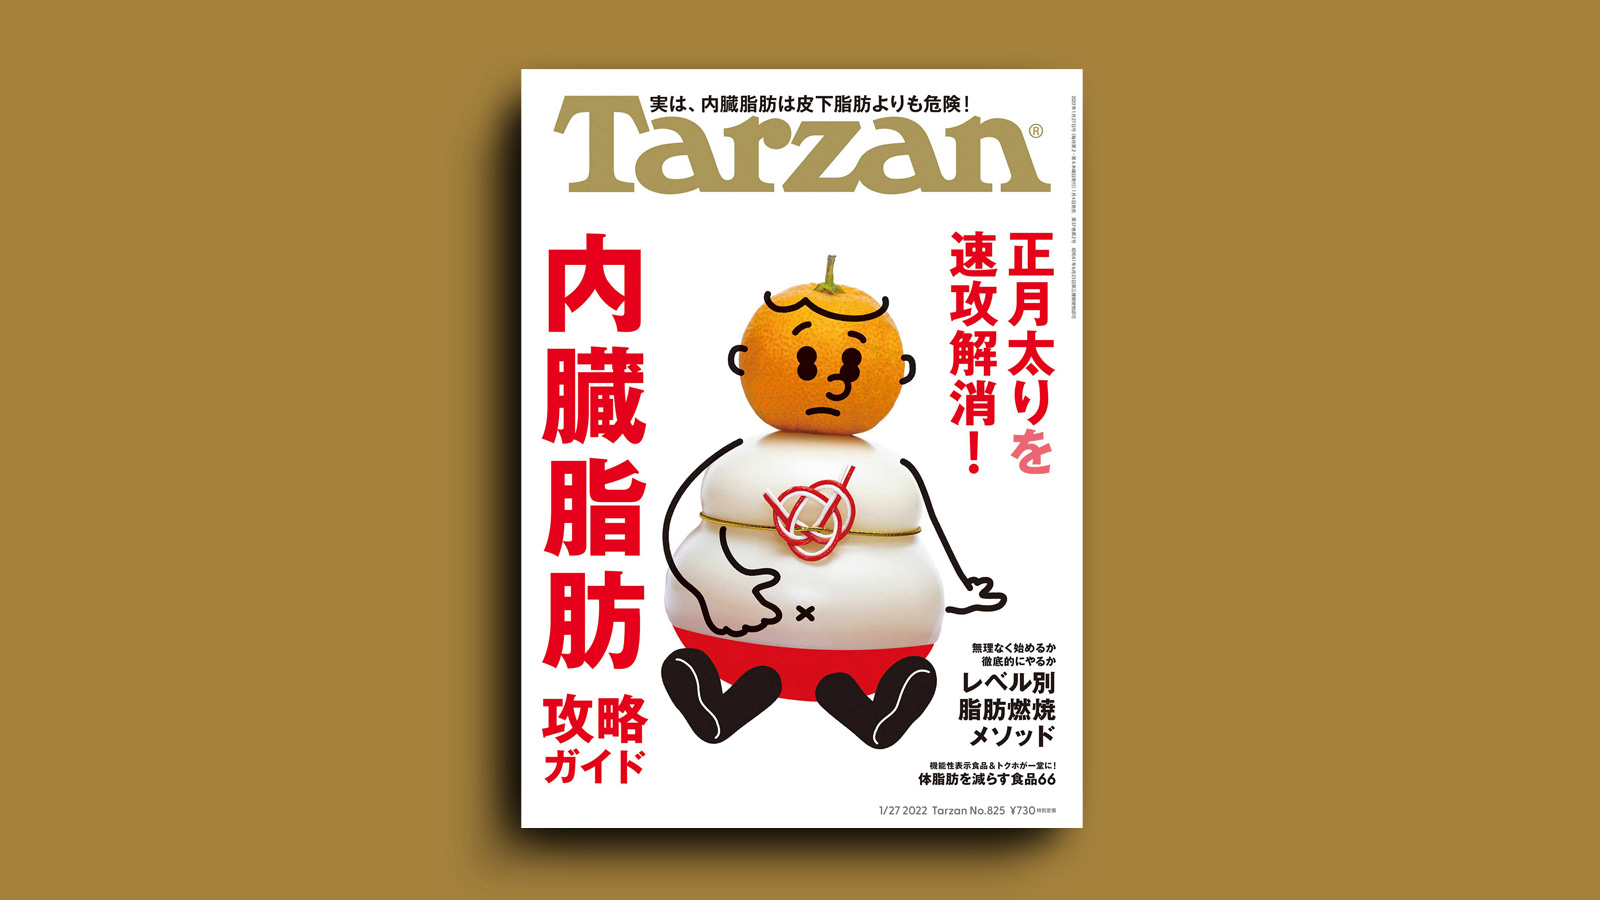 Tarzan No.779 2020 1 23号